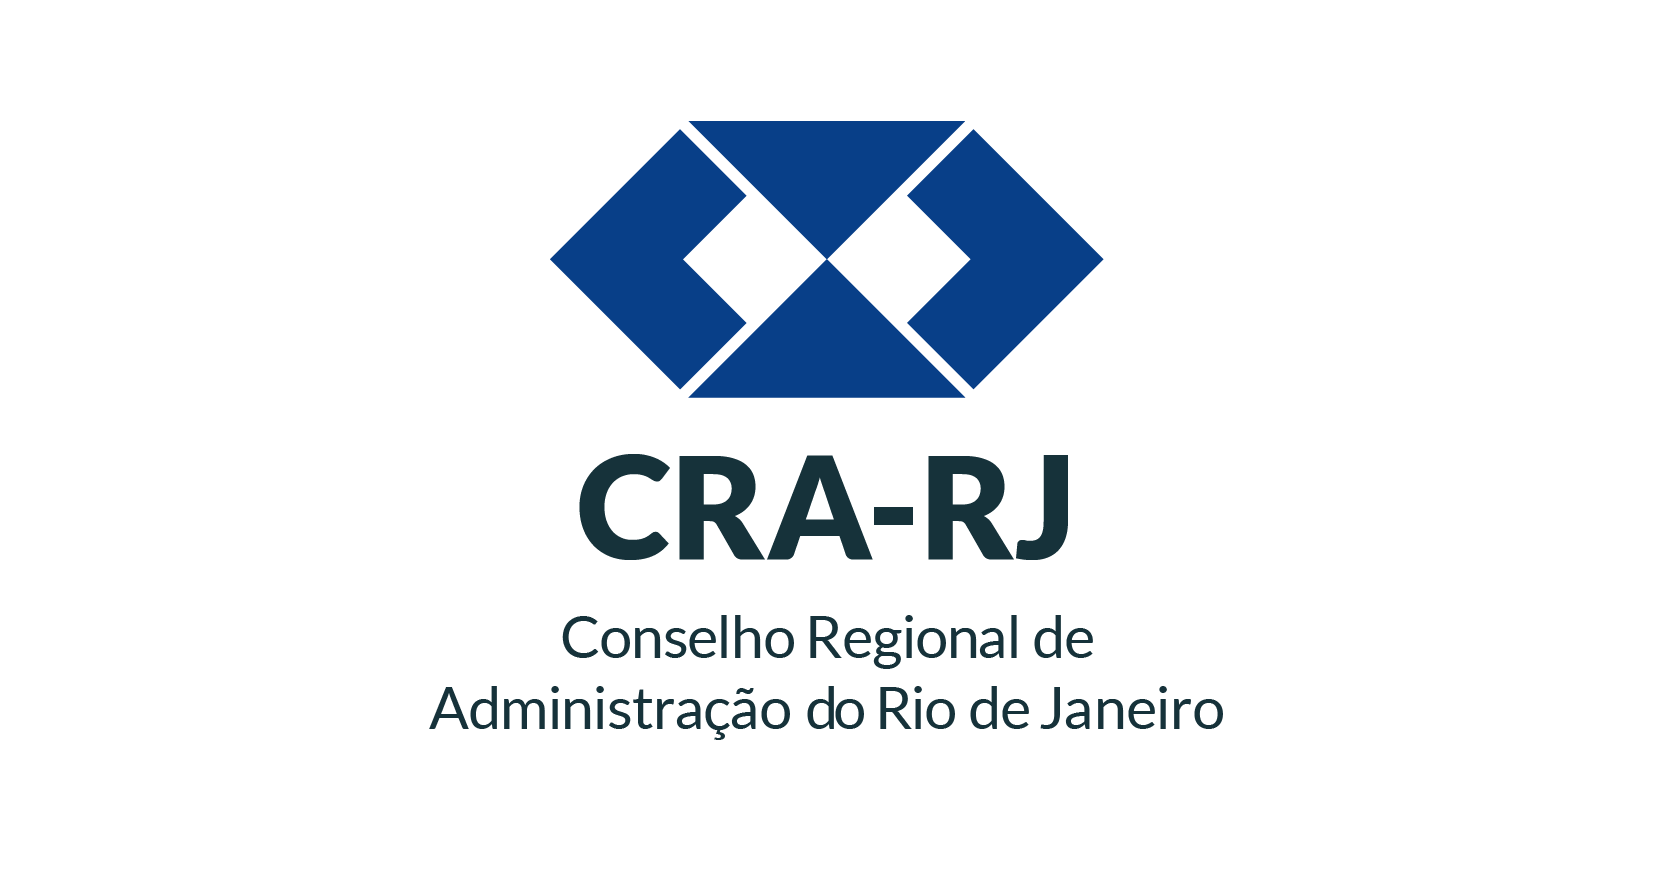 CRA RJ - Conselho Regional de Administração do Rio de Janeiro